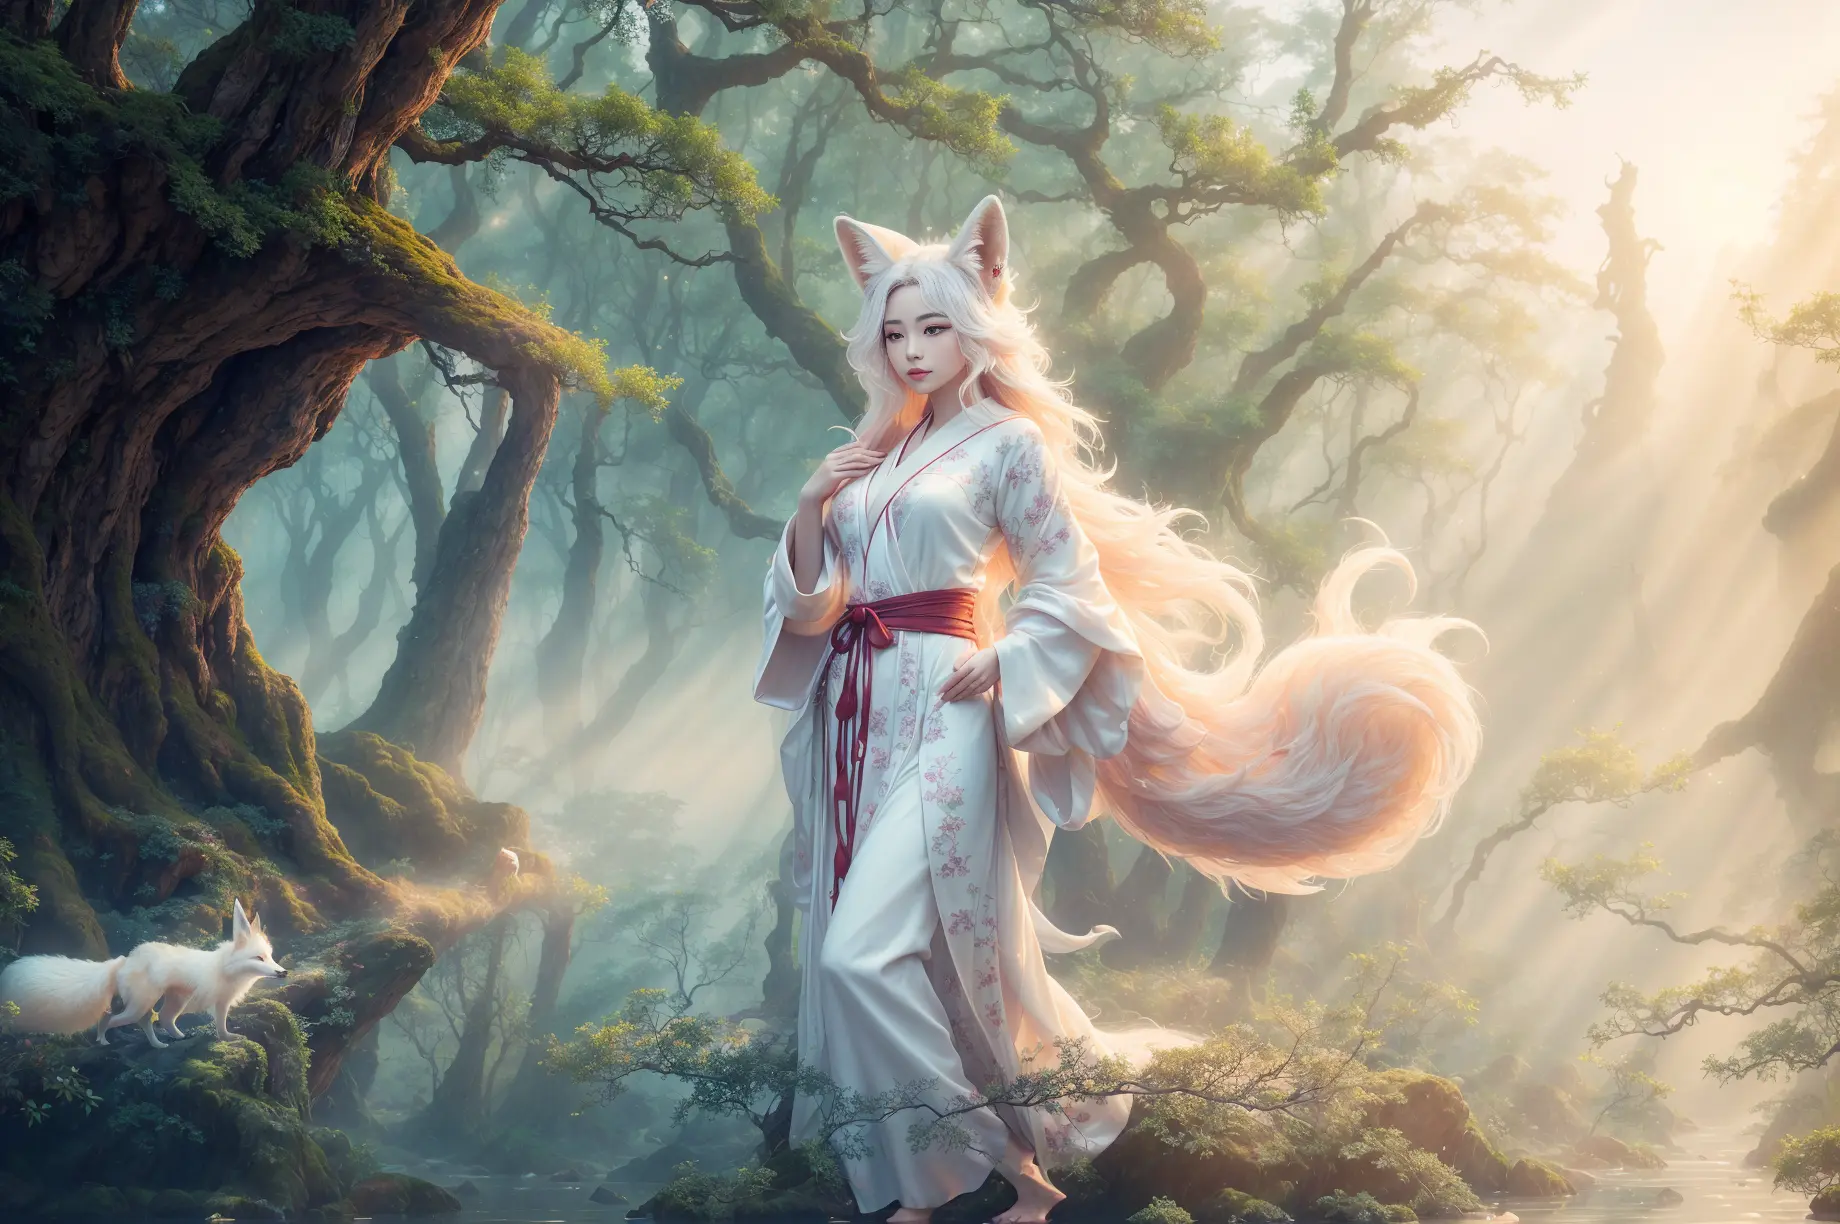 un esprit renard magnifique et éthéré vêtu d&#39;une robe chinoise blanche fluide. L&#39;image capture l&#39;esprit du renard se tenant gracieusement à la surface de l&#39;eau., entouré de nuages blancs et de brume qui confèrent à la scène une qualité surnaturelle. Les longs cheveux blancs et les robes de l&#39;esprit du renard sont balayés par le vent., ajouter du mouvement et de la fluidité à l&#39;image. Utilisez les outils de pinceau avancés de Midjourney pour créer des plis et des textures complexes dans les robes et les cheveux de l&#39;esprit du renard., et expérimentez différentes palettes de couleurs et coups de pinceau pour faire ressortir la qualité éthérée de la scène.. La beauté de l&#39;esprit du renard est encore renforcée par la façon dont son image est parfois obscurcie par la brume environnante., donner à la scène un sentiment de mystère et d&#39;enchantement. avec les outils puissants de Midjourney, vous pouvez donner vie à cette scène captivante et éthérée avec des détails et une beauté incroyables.
hdr, (photoréalisme, qualité de chef-d&#39;œuvre, meilleure qualité), , pureerosface_v1,ulzzang-6500-v1.1,